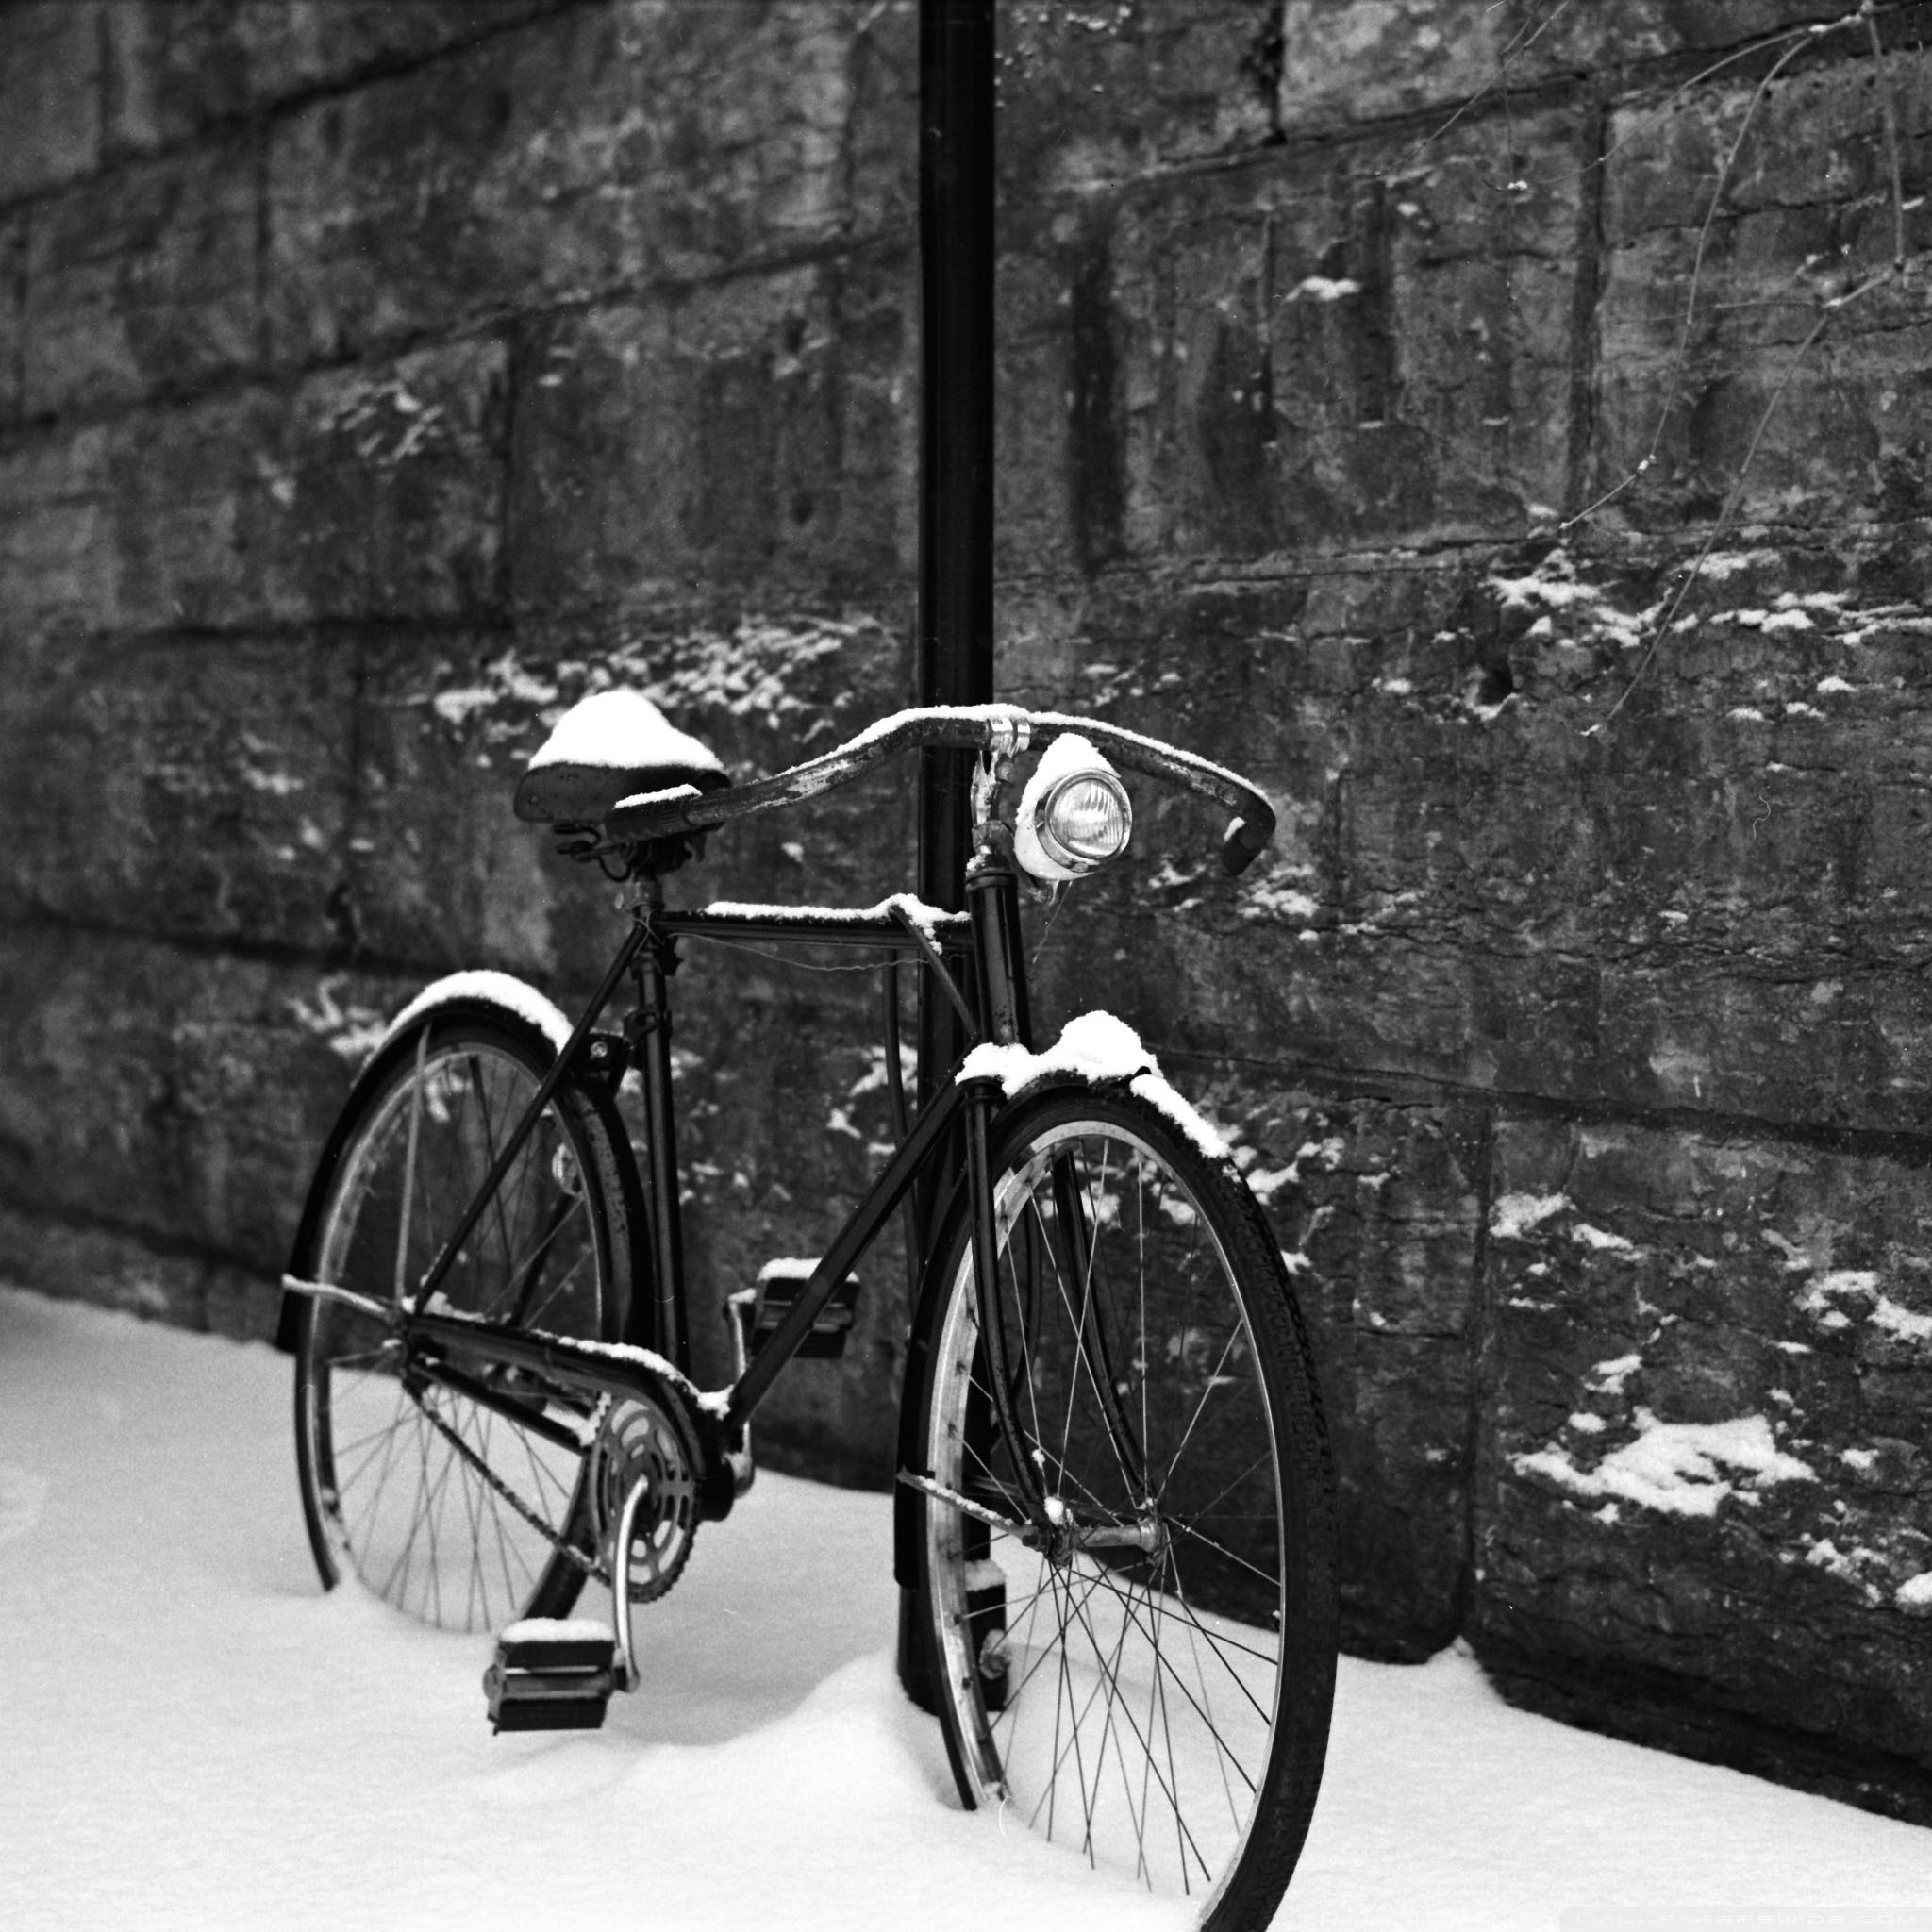 雪の積もった自転車 モノクロ写真のipad壁紙 Ipad タブレット壁紙ギャラリー